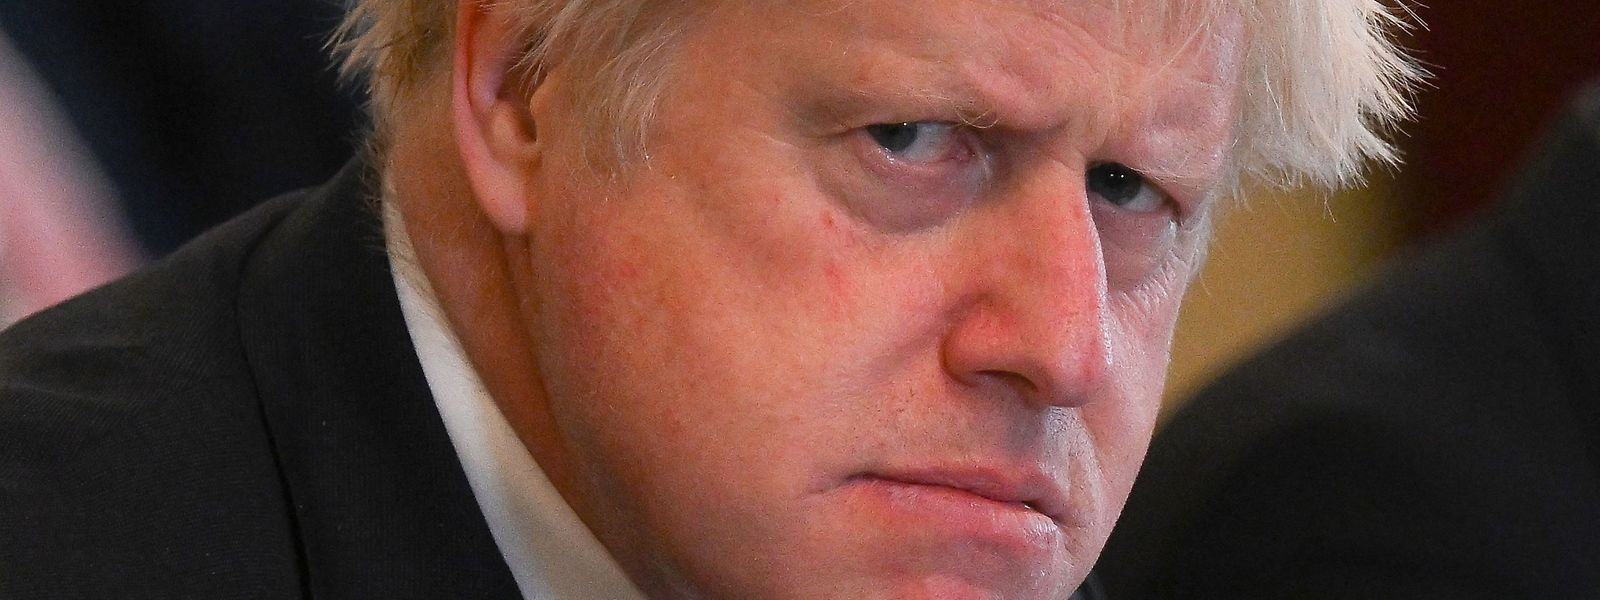 Am Ende wurde der Druck zu groß für Boris Johnson. Der konservative Politiker hat seinen Rückzug als Regierungs- und Parteichef angekündigt. Doch er macht klar, dass er nicht freiwillig geht. Und aus der Downing Street verabschiedet er sich auch noch nicht.